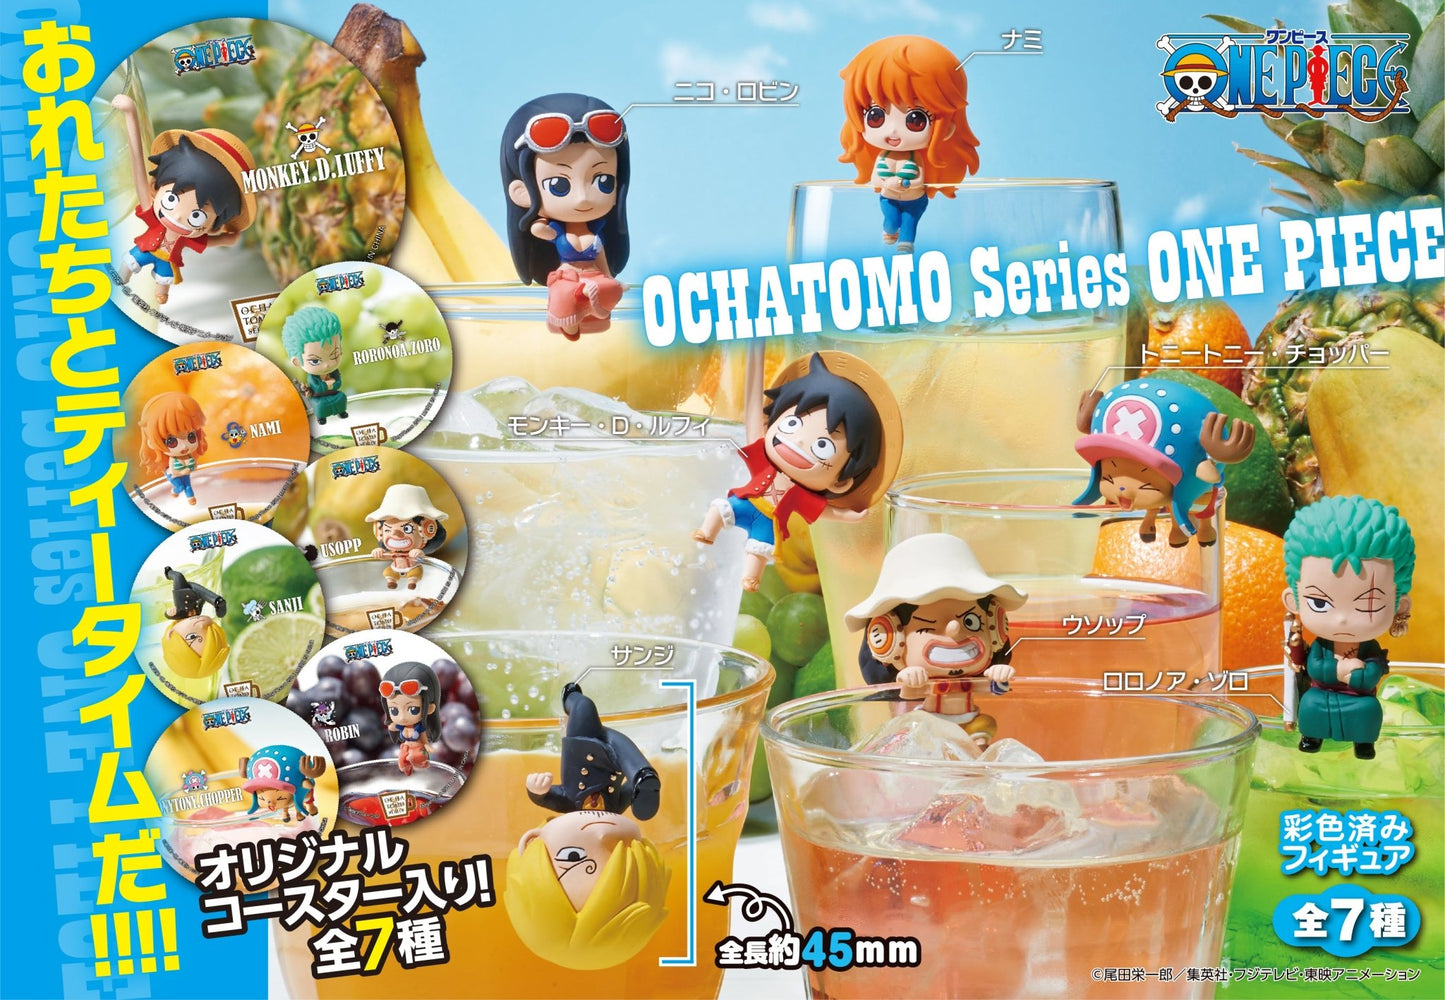 MegaHouse - Ochatomo Series ONE PIECE Pirates Tea Time: 1 Random Pull - Good Game Anime